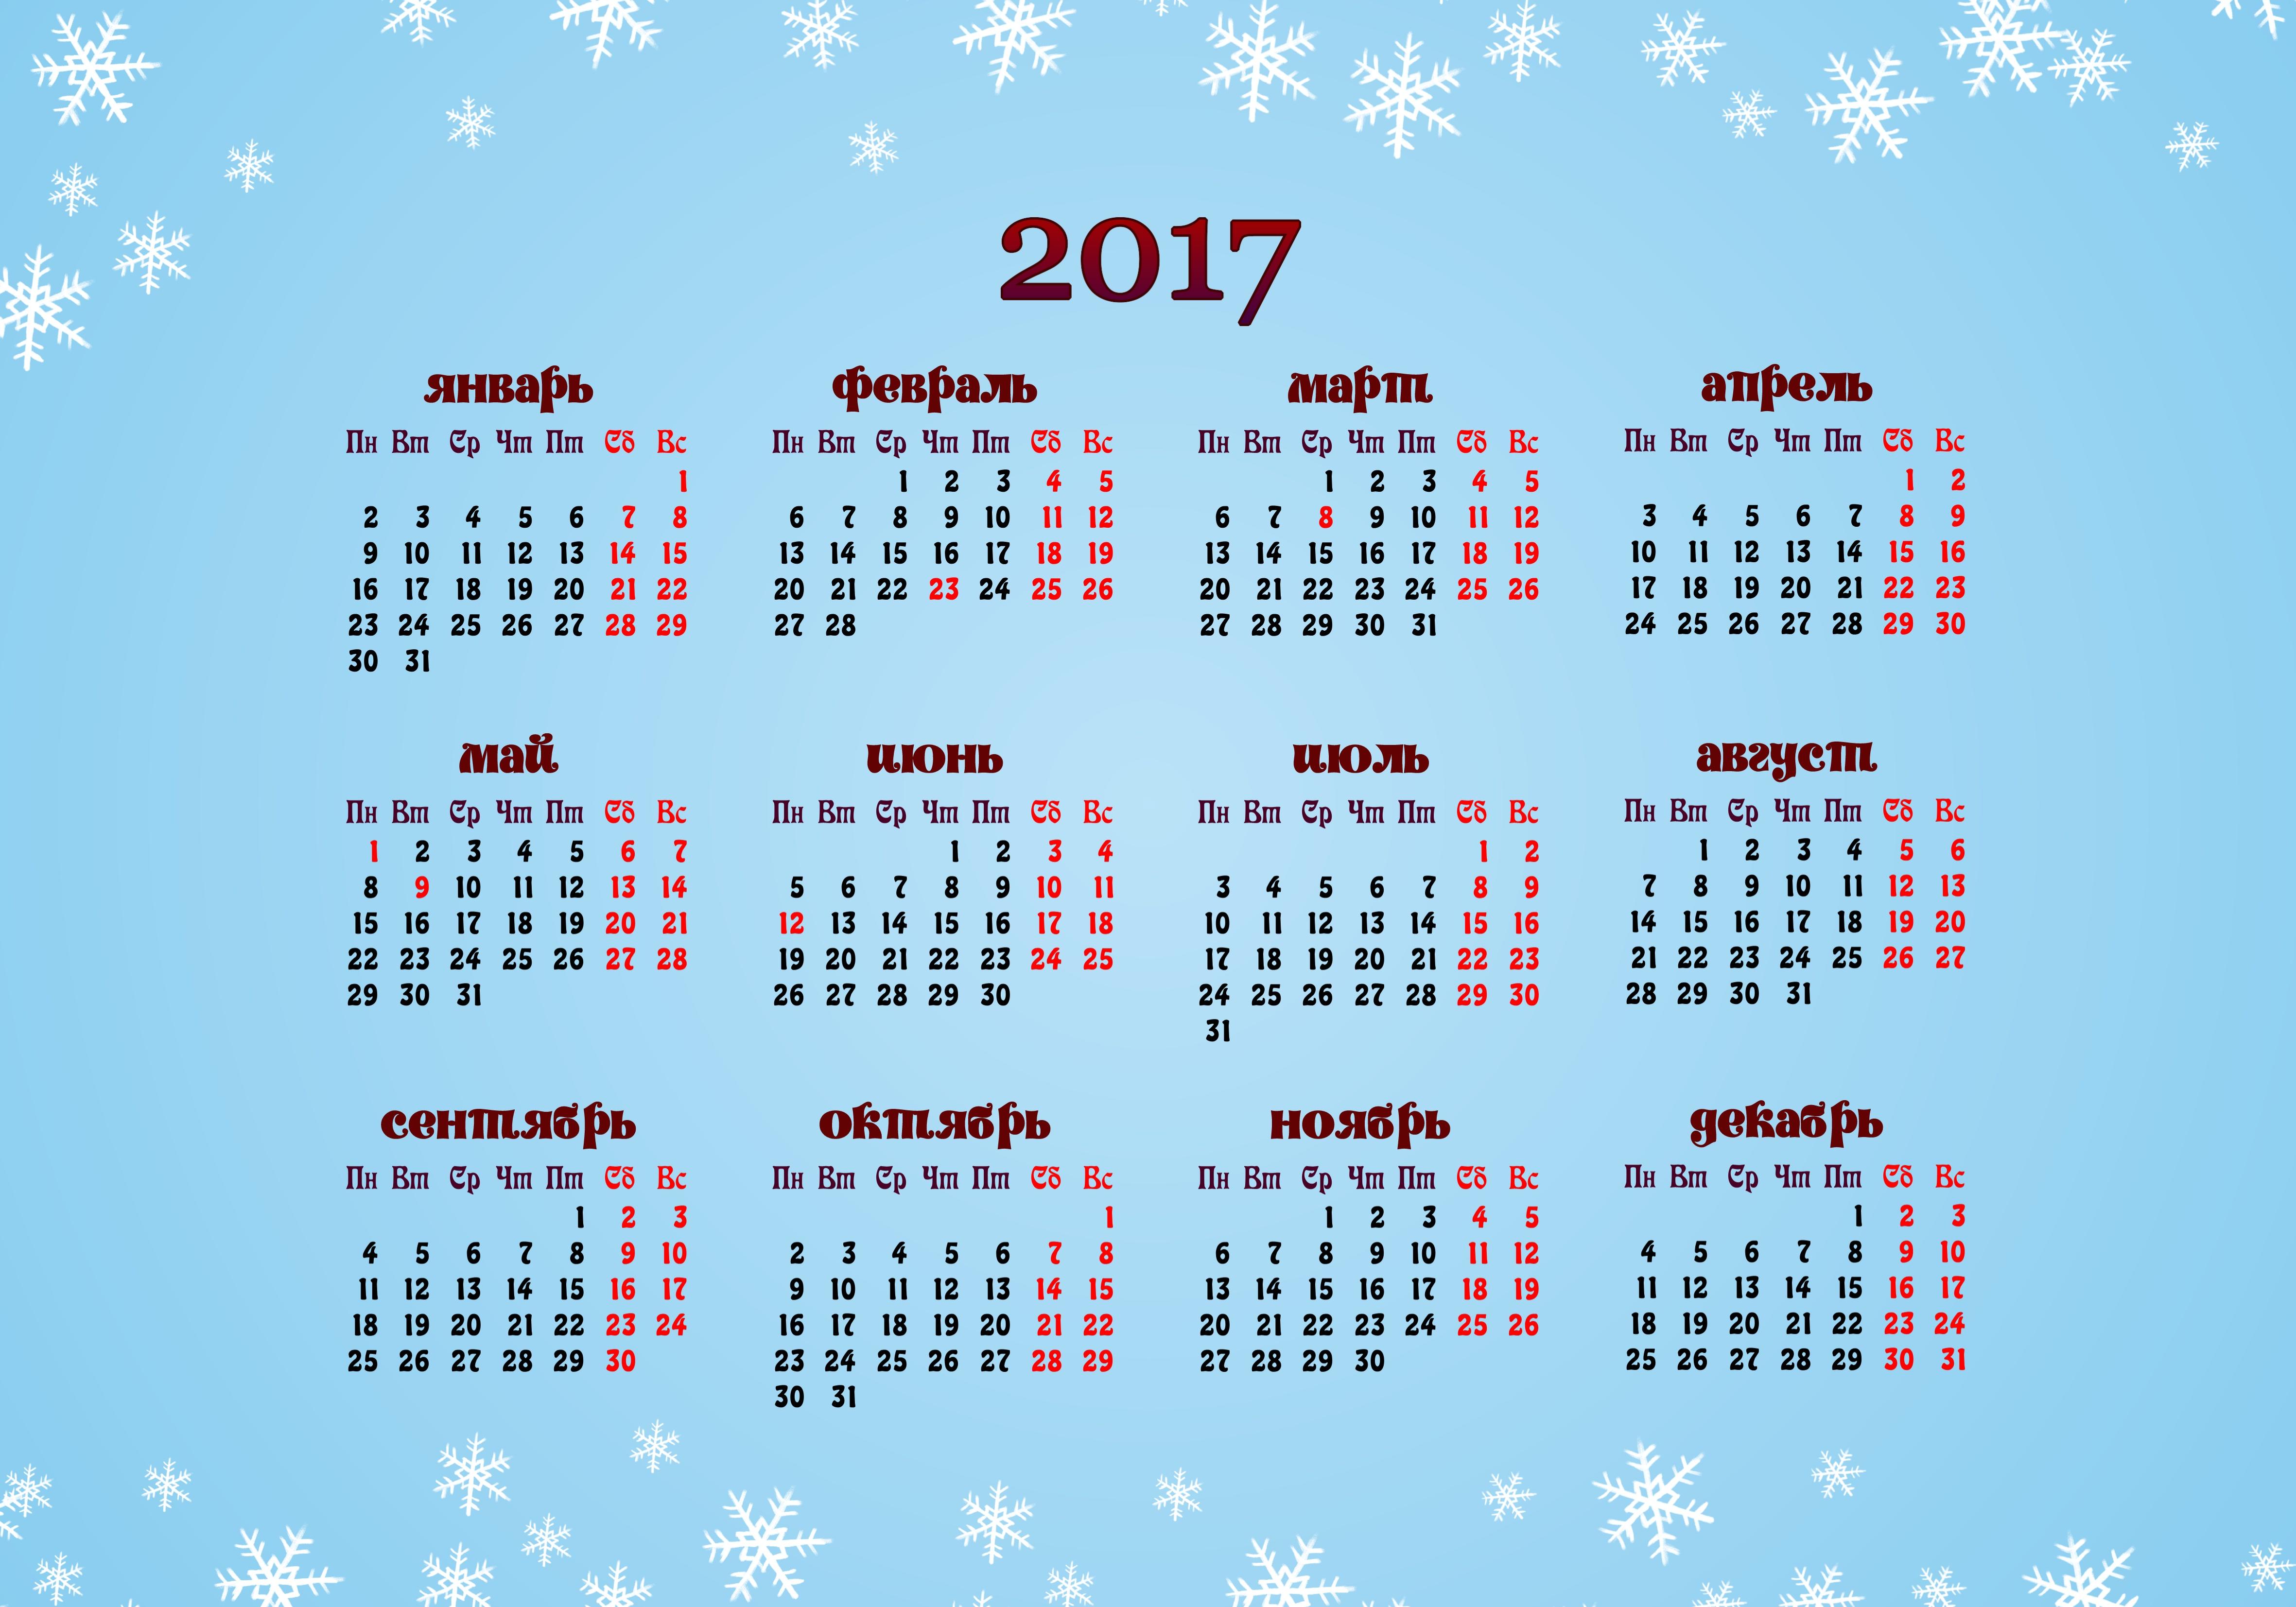 Декабря 2017 года. Календарь 2017. Календарик 2017 год. Календарная сетка на 2017 год. Календарь 2017 года по месяцам.